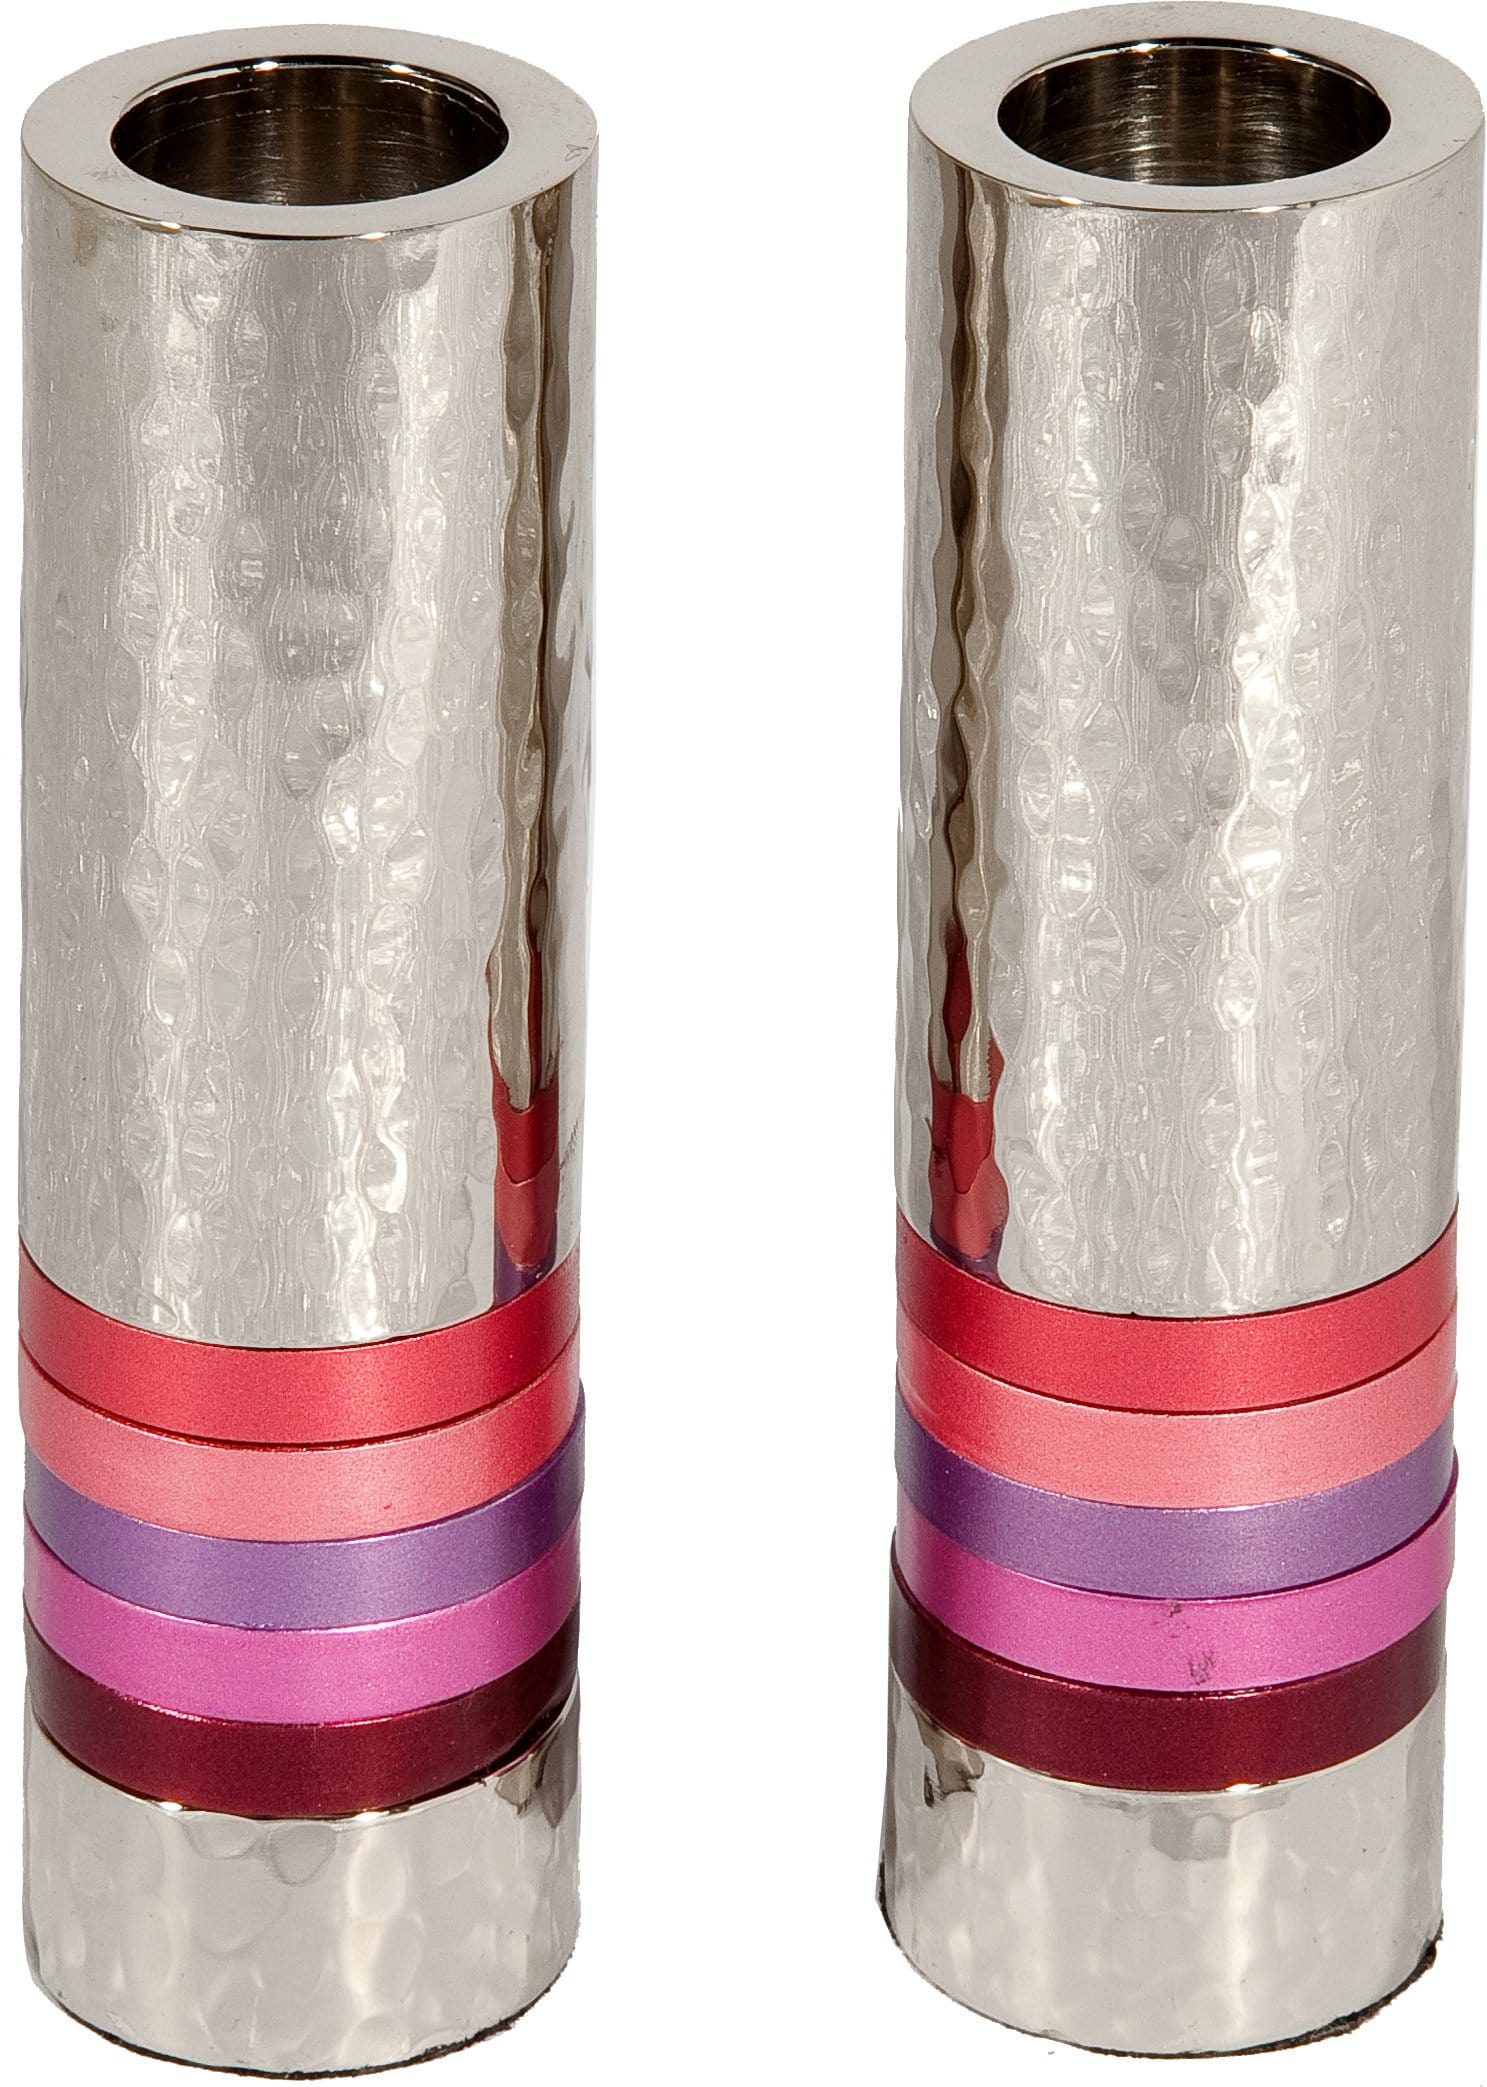 Yair Emanuel Candlesticks Default Cylinder Hammered Candlesticks by Yair Emanuel - Pink